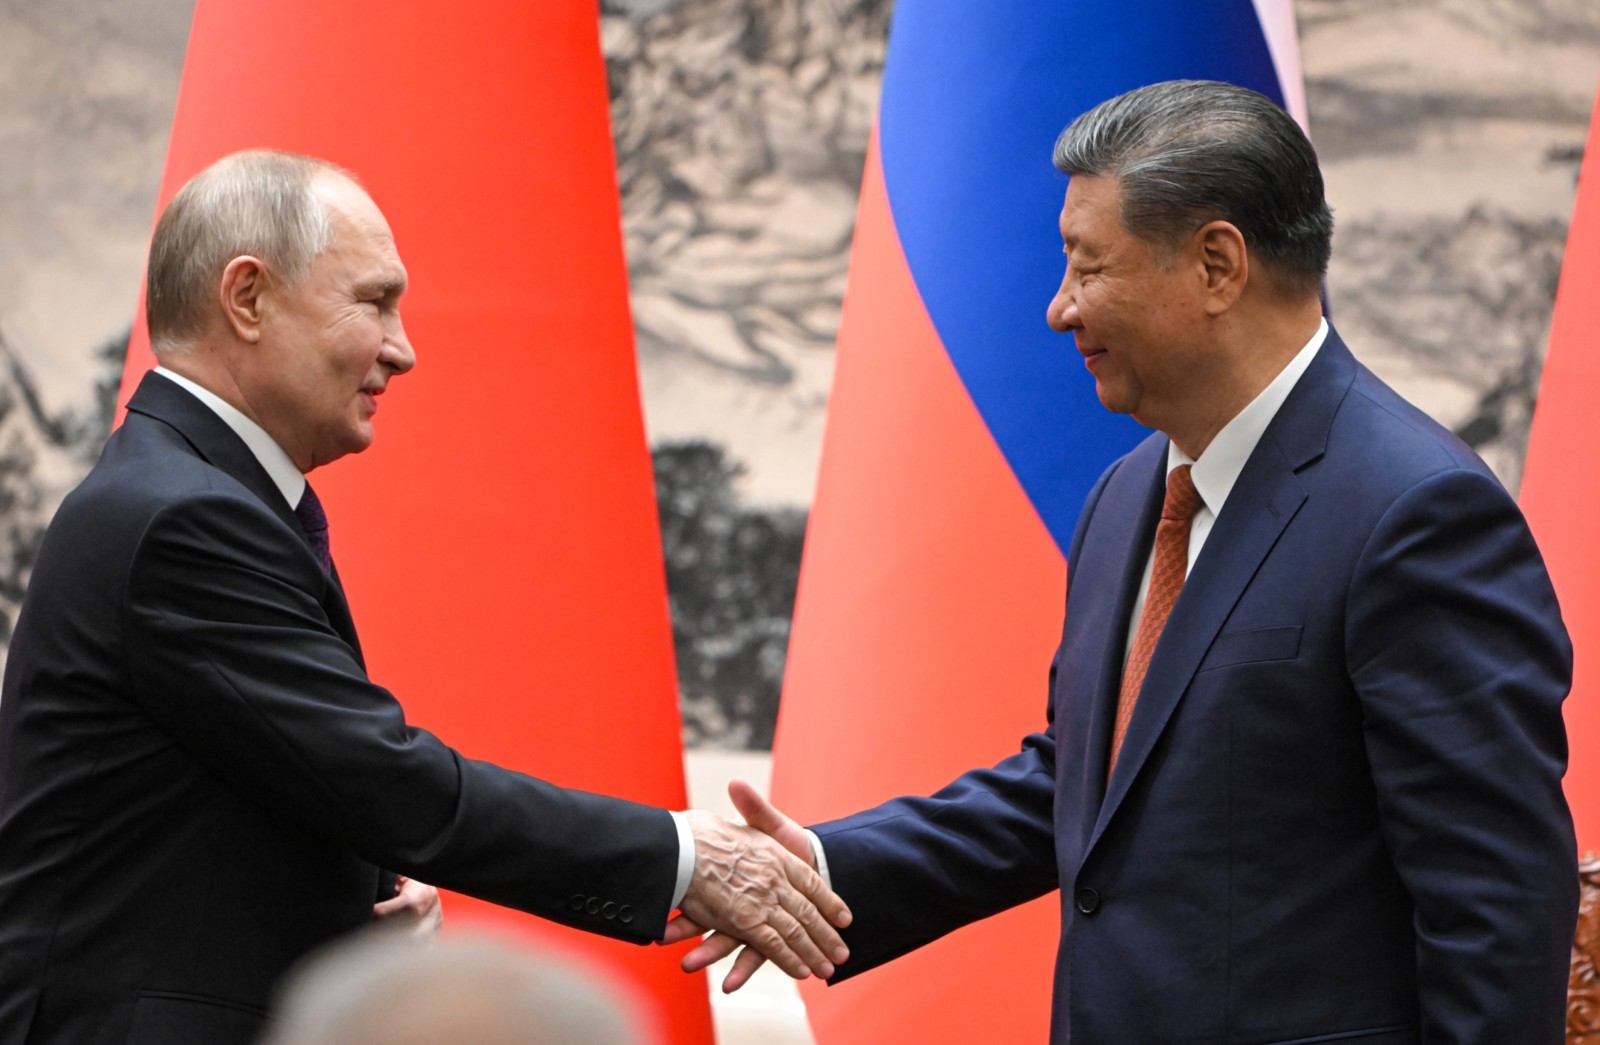 Хазин: Китай пытался кинуть Россию